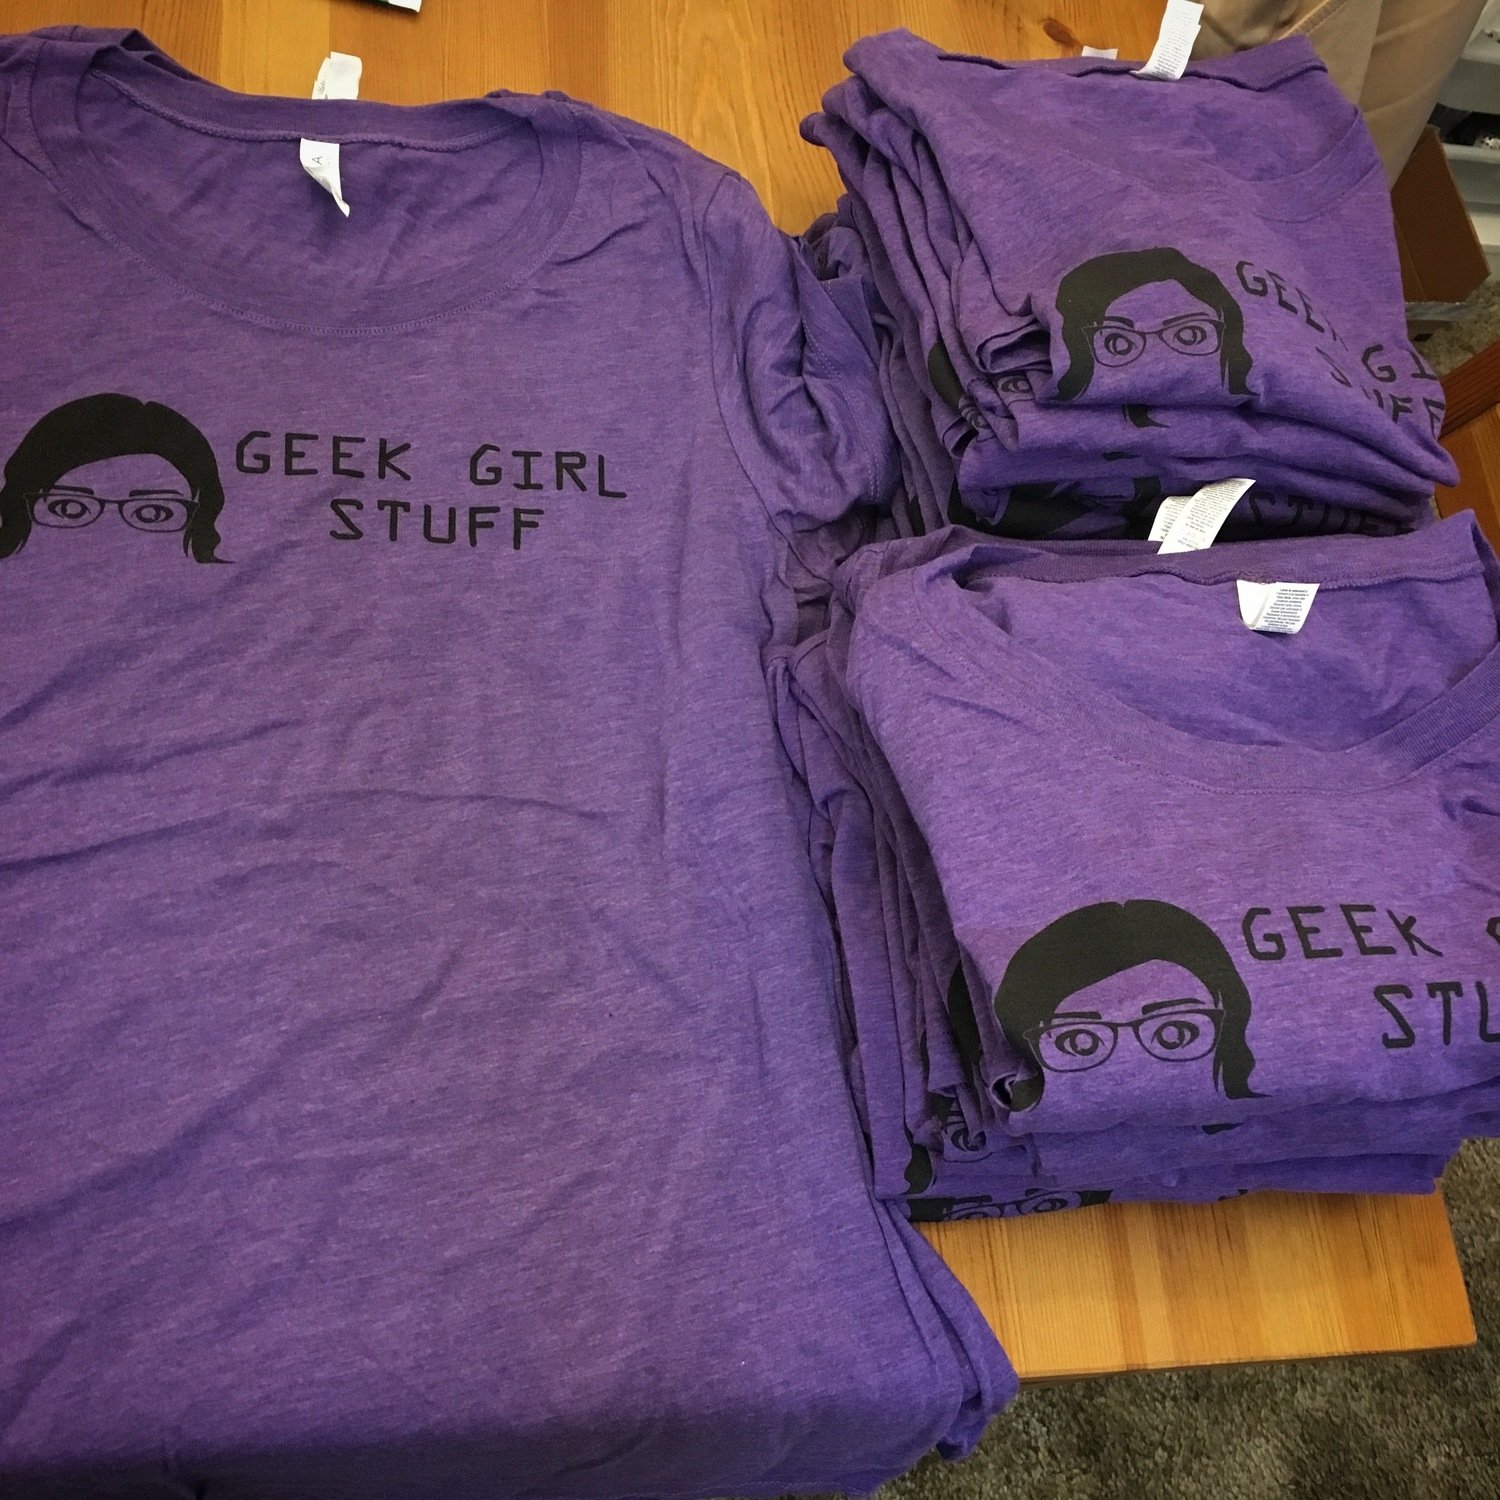 Geek Girl Stuff T-shirt - Men's XL